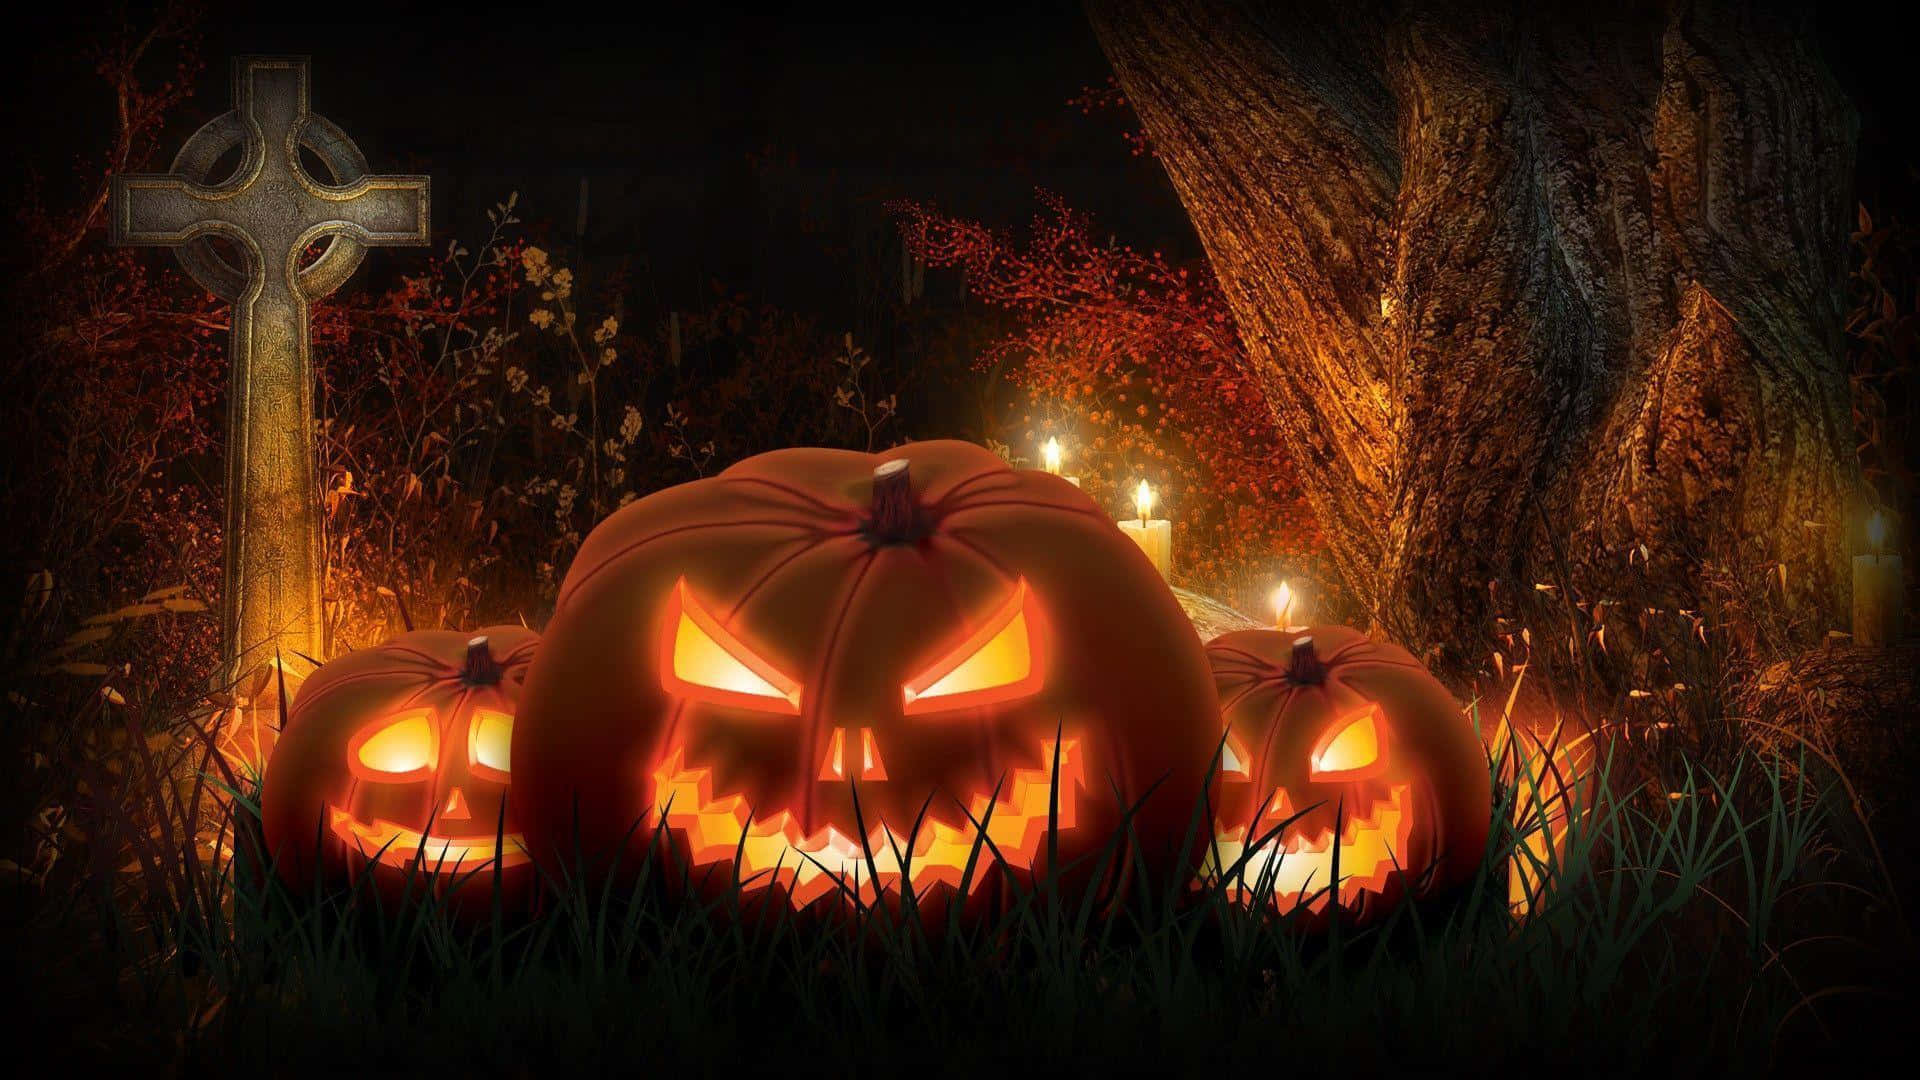 Unaescena De Halloween Con Una Calabaza De Jack-o'-lantern, Un Espantapájaros Aterrador Y Un Cementerio Lleno De Niebla. Fondo de pantalla